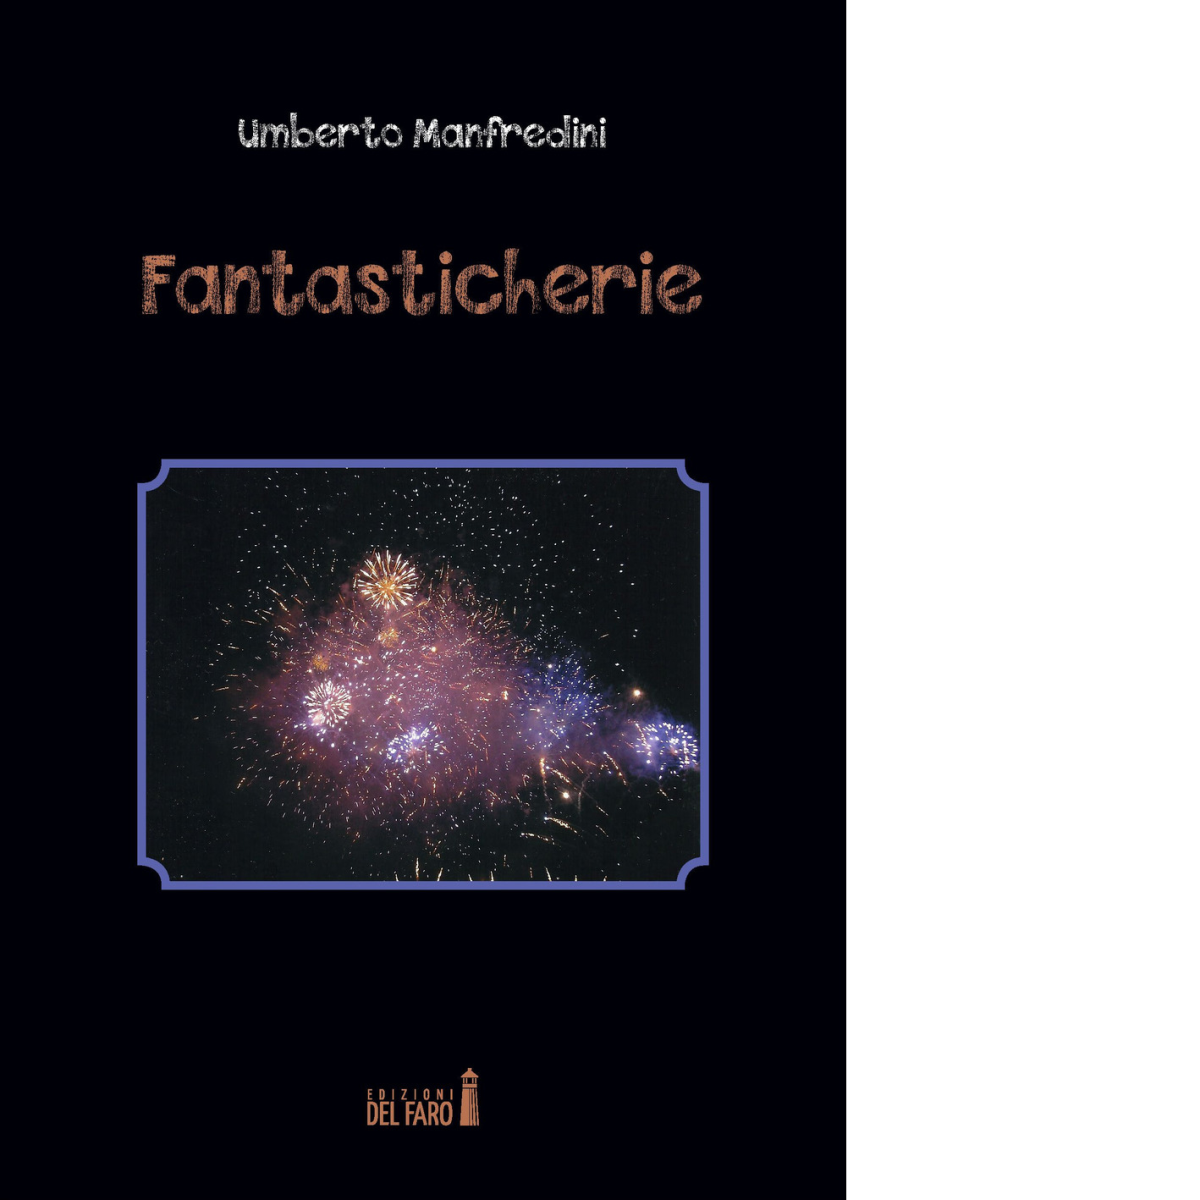 Fantasticherie di Manfredini Umberto - Edizioni Del faro, 2017 libro usato